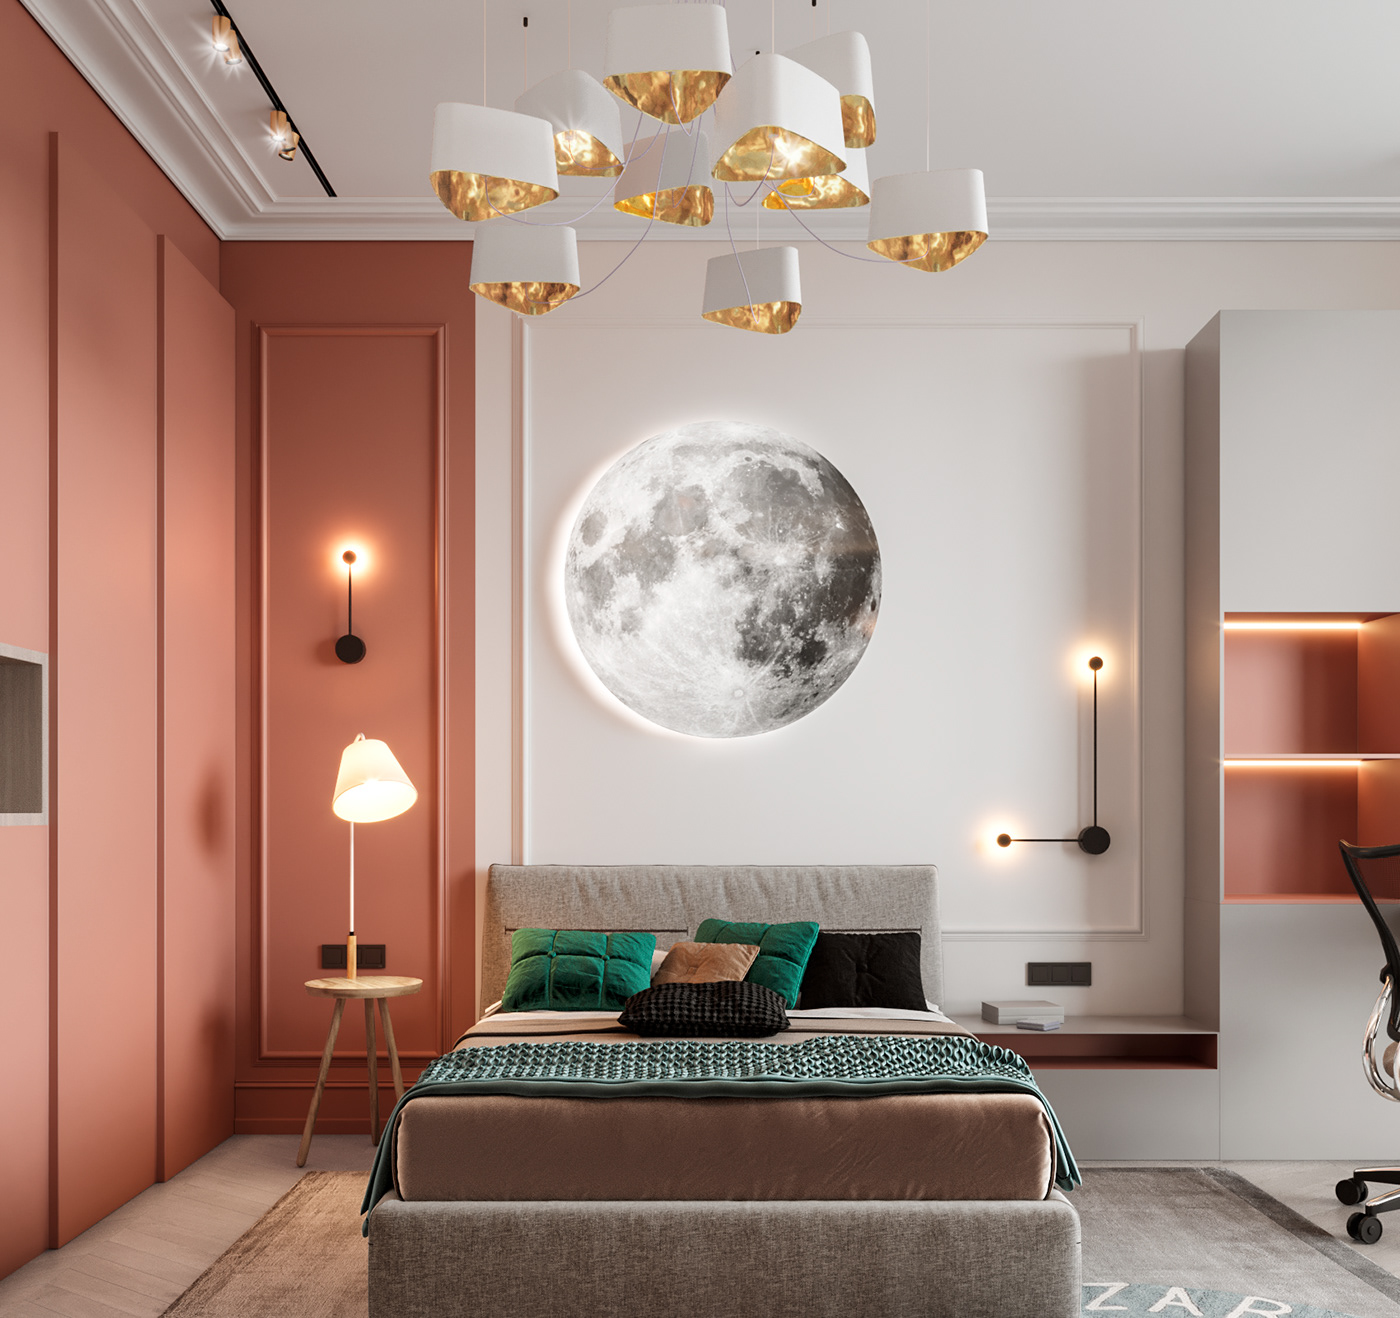 3D 3ds max architecture bedroom interior design  kids room design minimal modern modern interior visualization